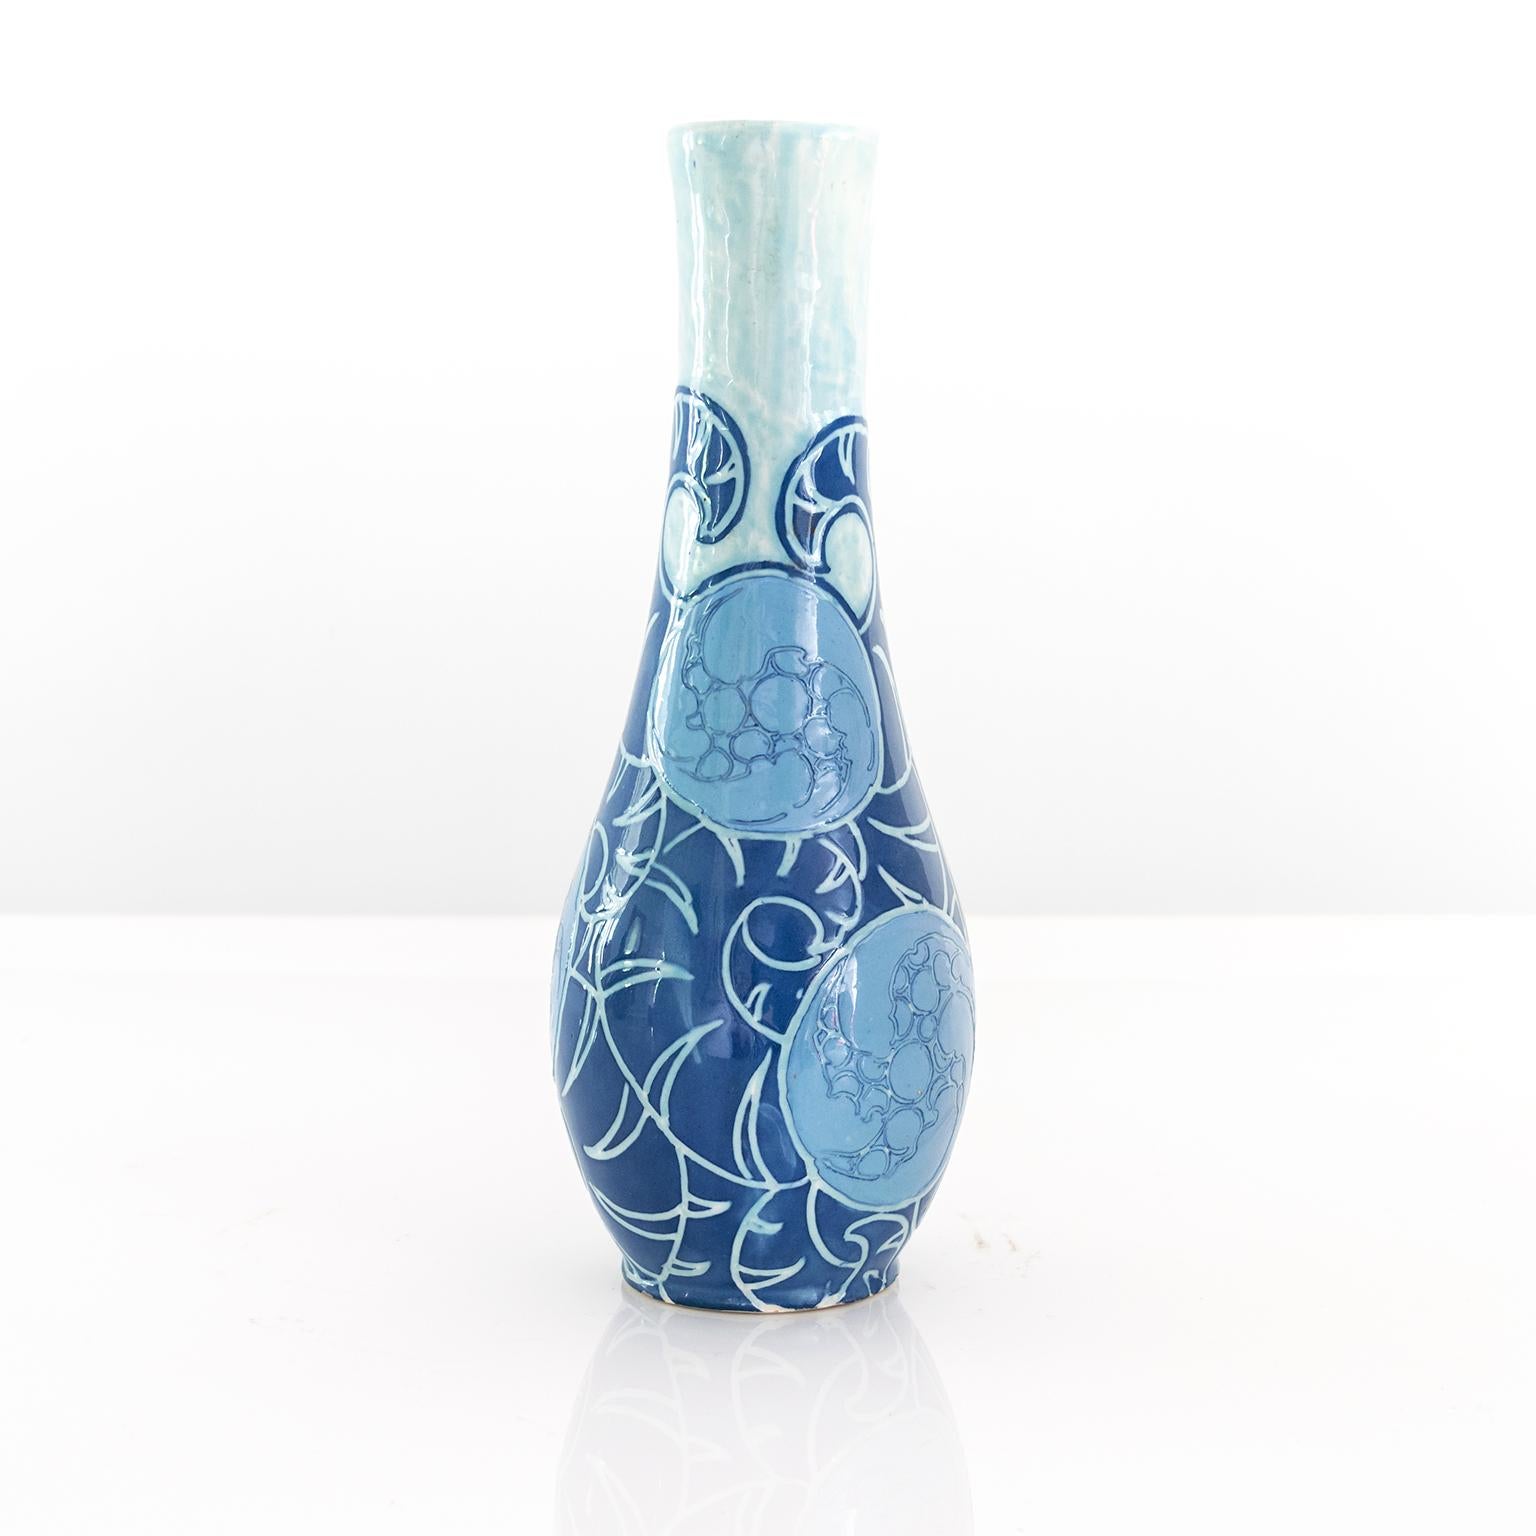 Schwedische Sgraffito-Vase im Jugendstil in Blau, entworfen von Gunnar Wennerberg für Gustavsberg, 1905.

Maße: Höhe: 11